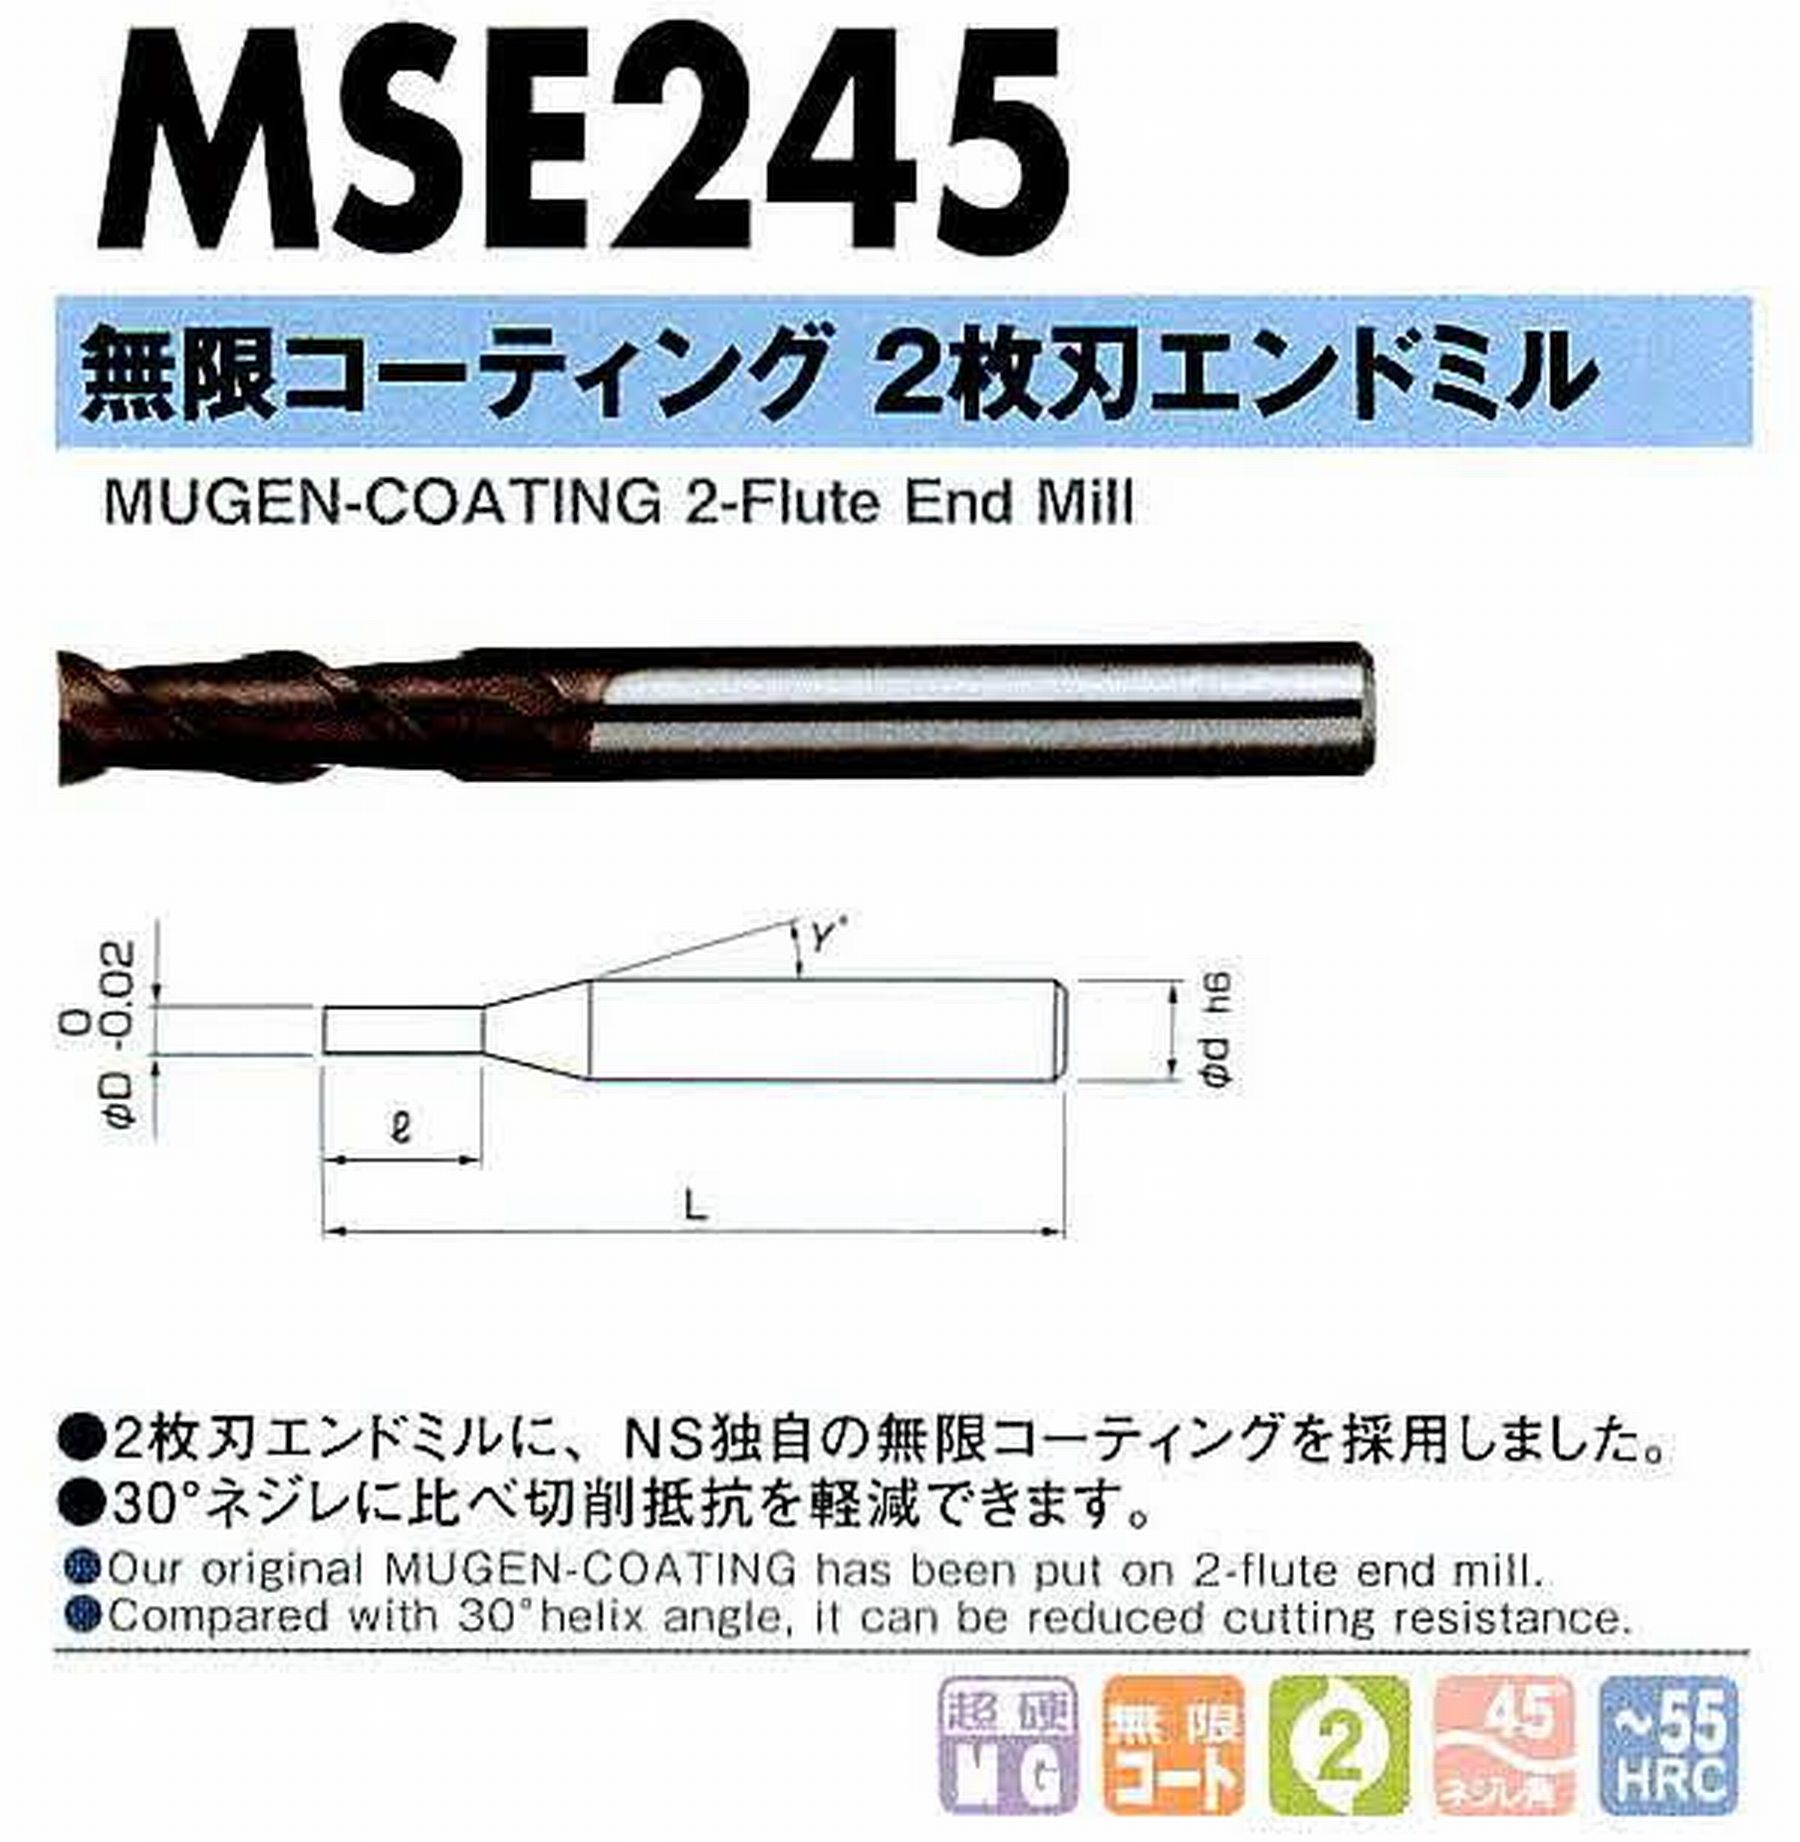 NS 日進工具 MSE245 無限コーティング2枚刃エンドミル コードNO．08-00120-00600 刃径6 刃長15 首角- シャンク径6mm 全長55